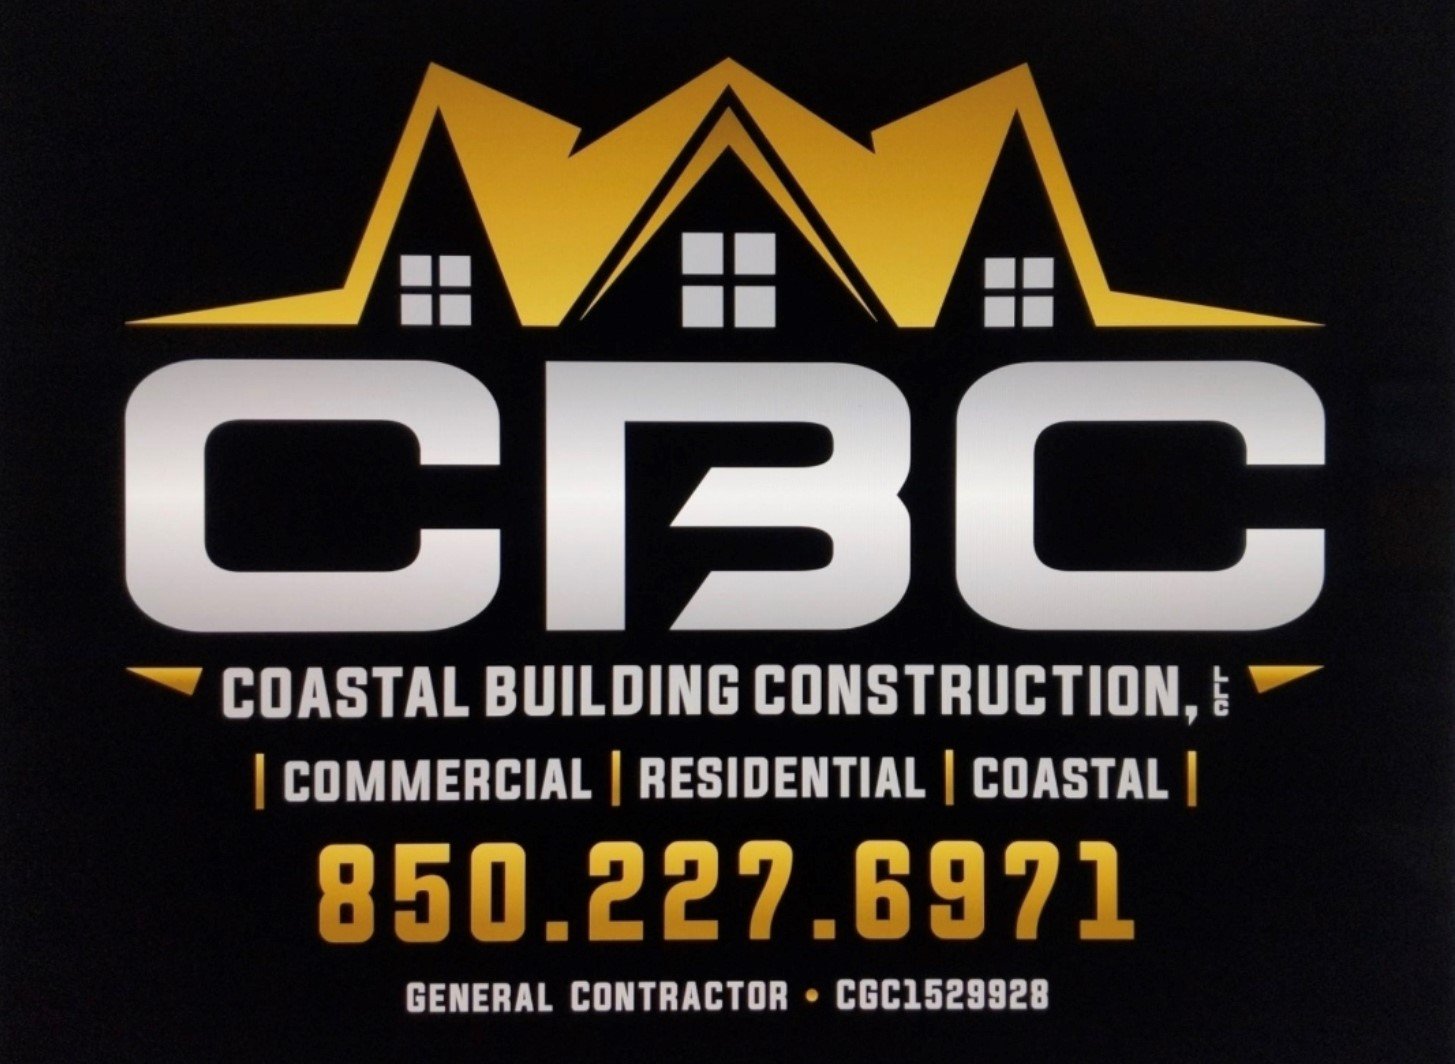 Coastal Building Construction